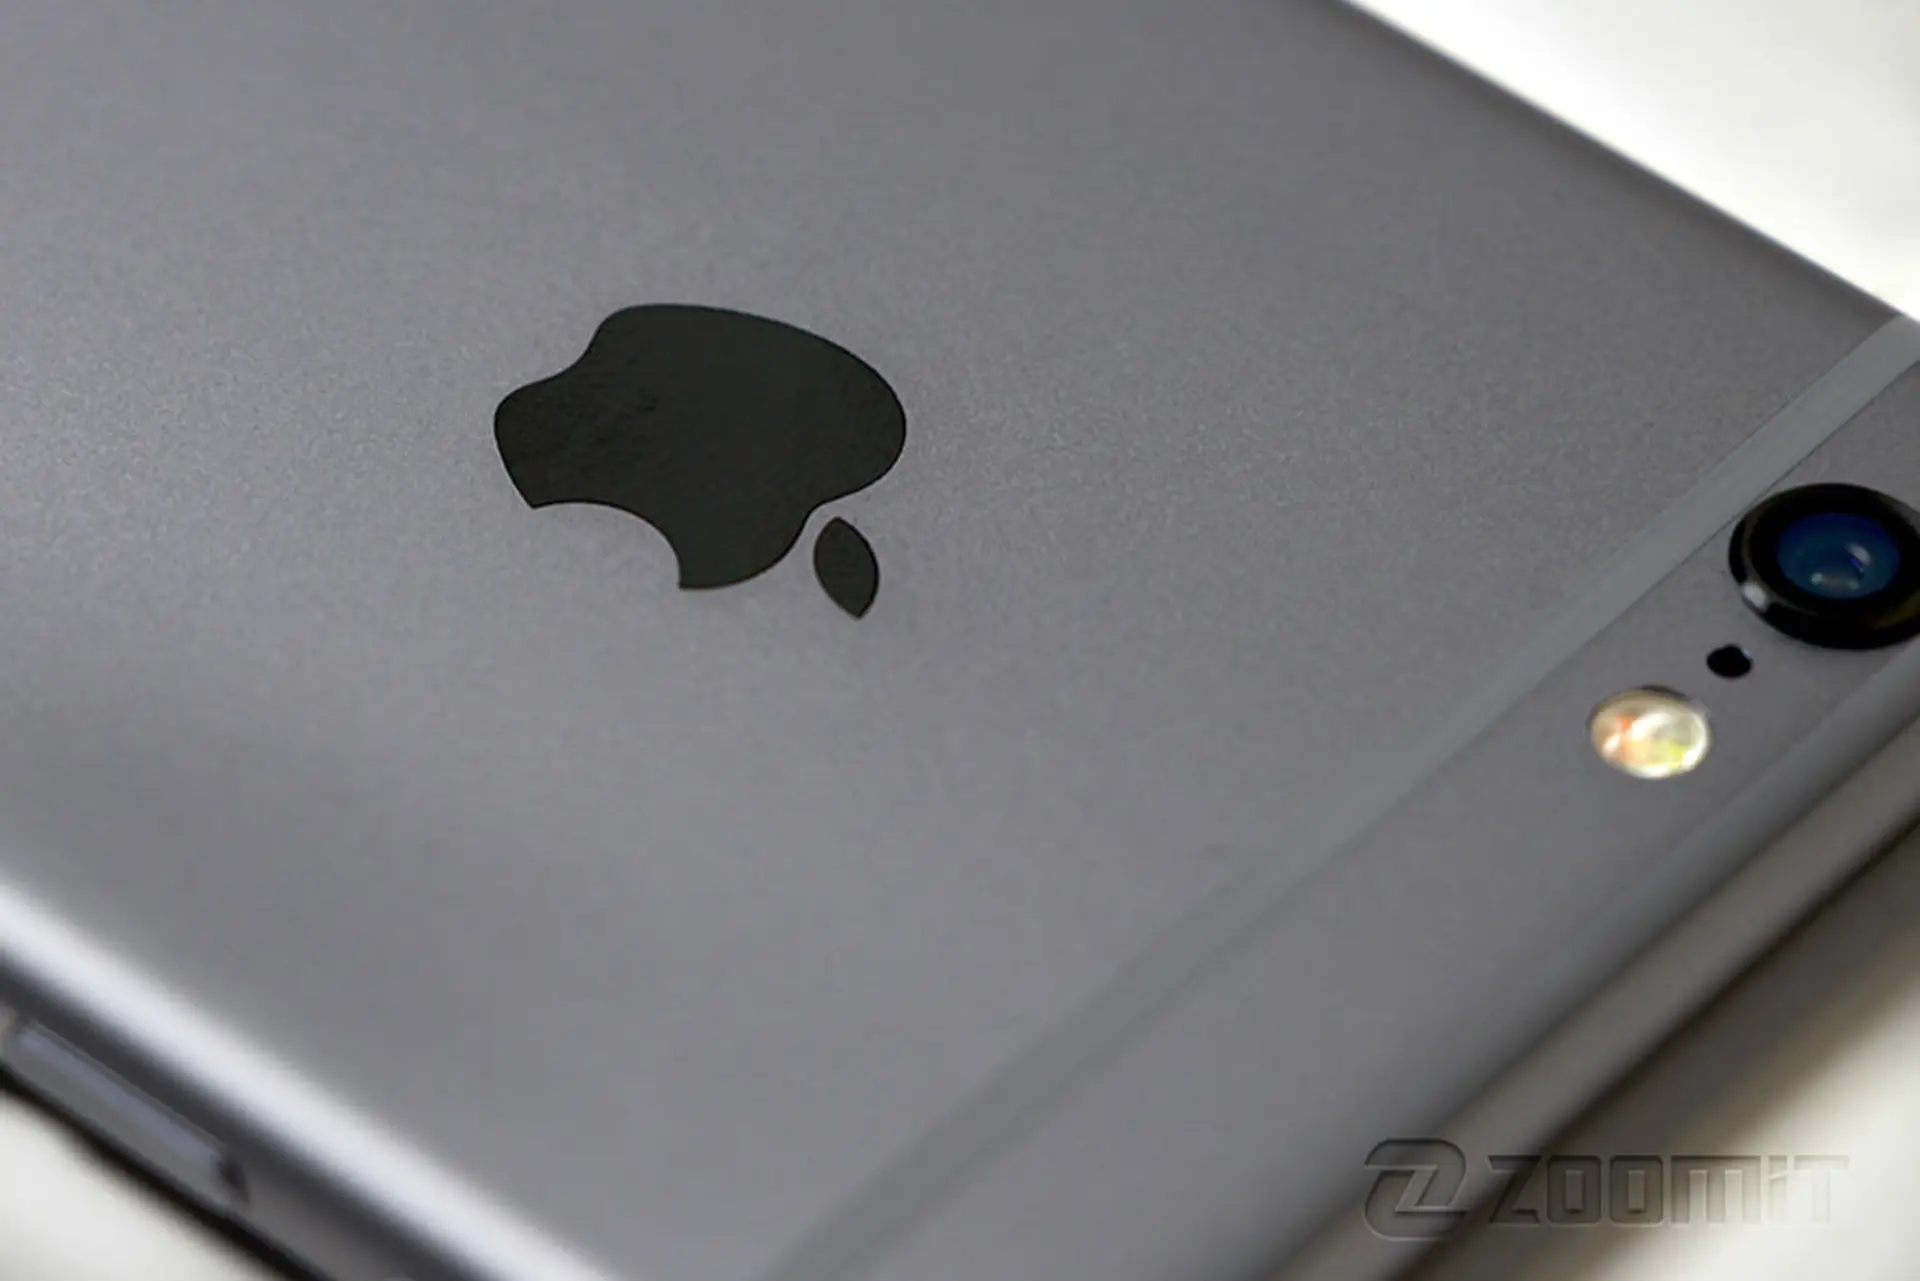 مرجع متخصصين ايران اپل آيفون 6 / Apple iPhone 6